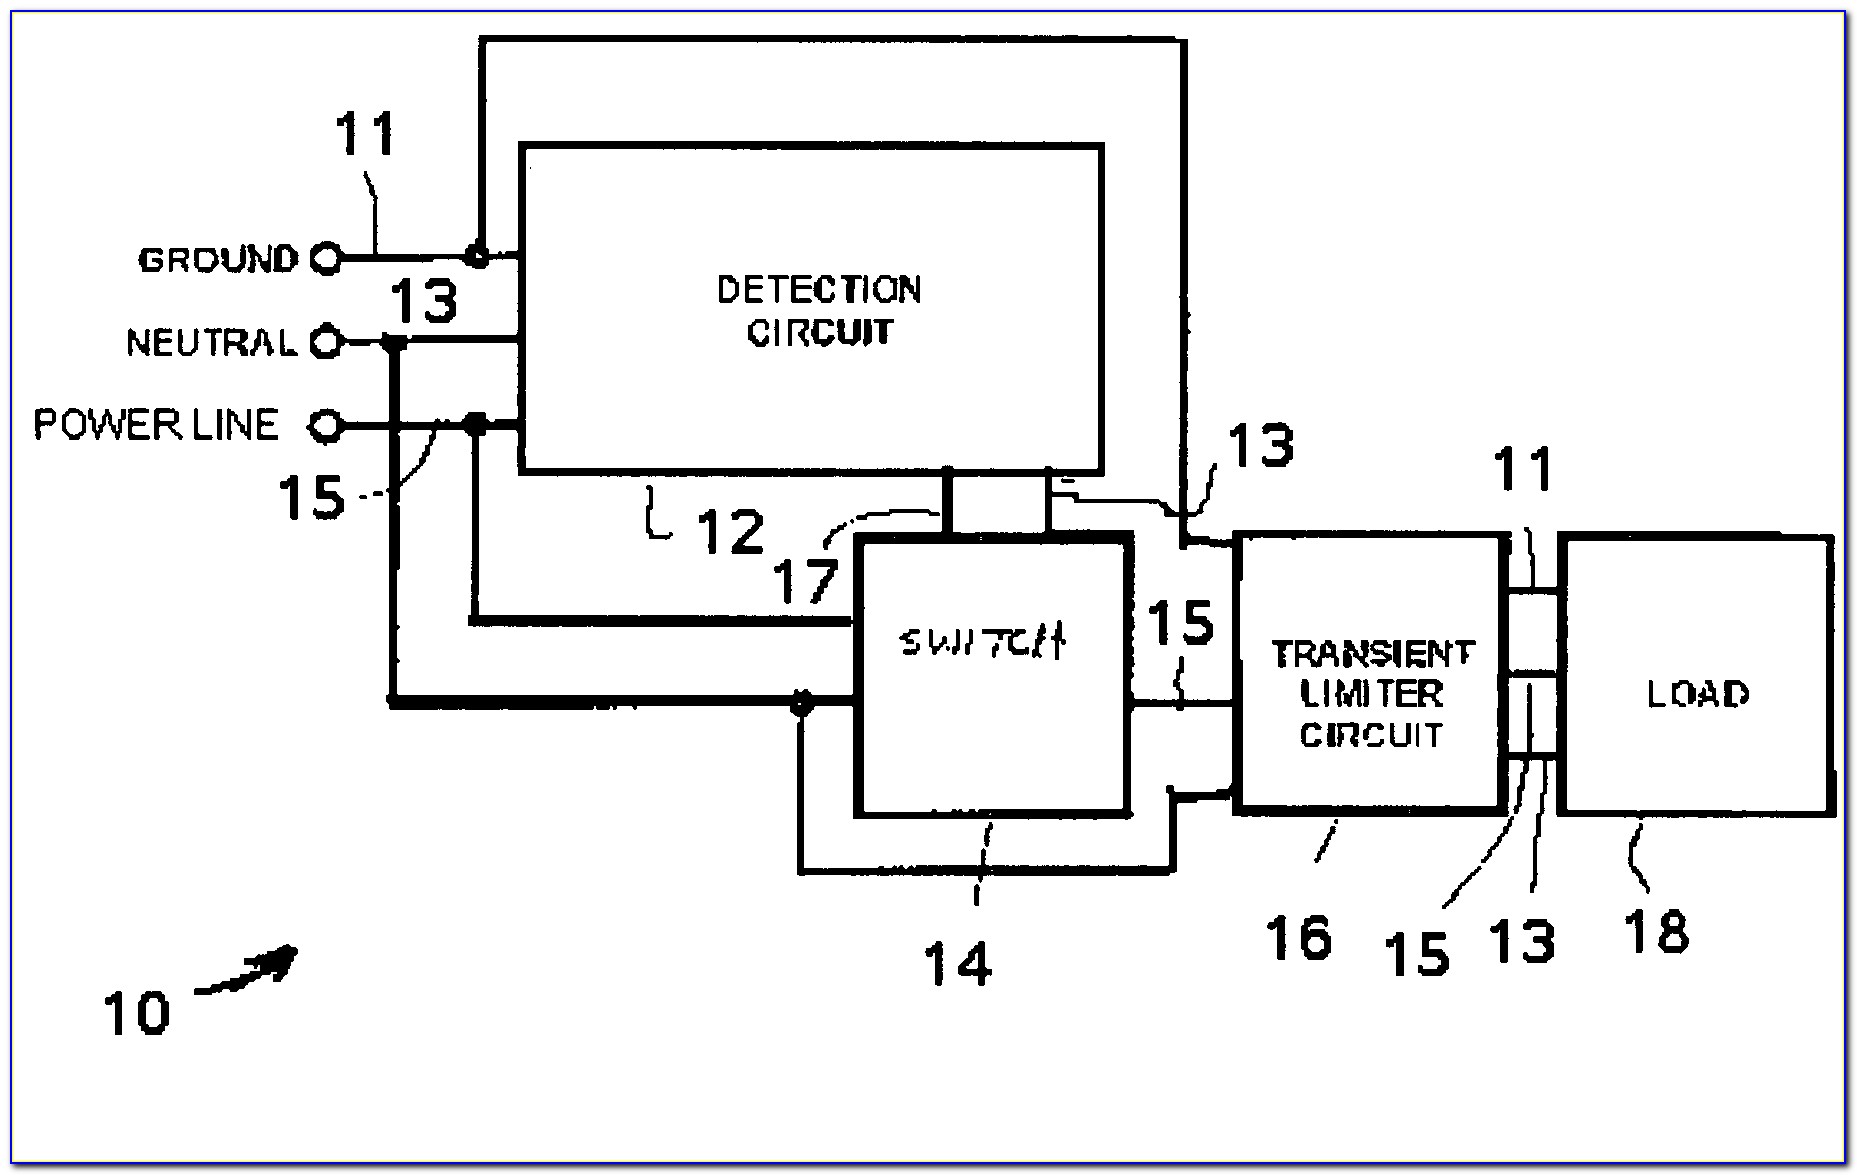 Circuit Breaker Diagram Gcse